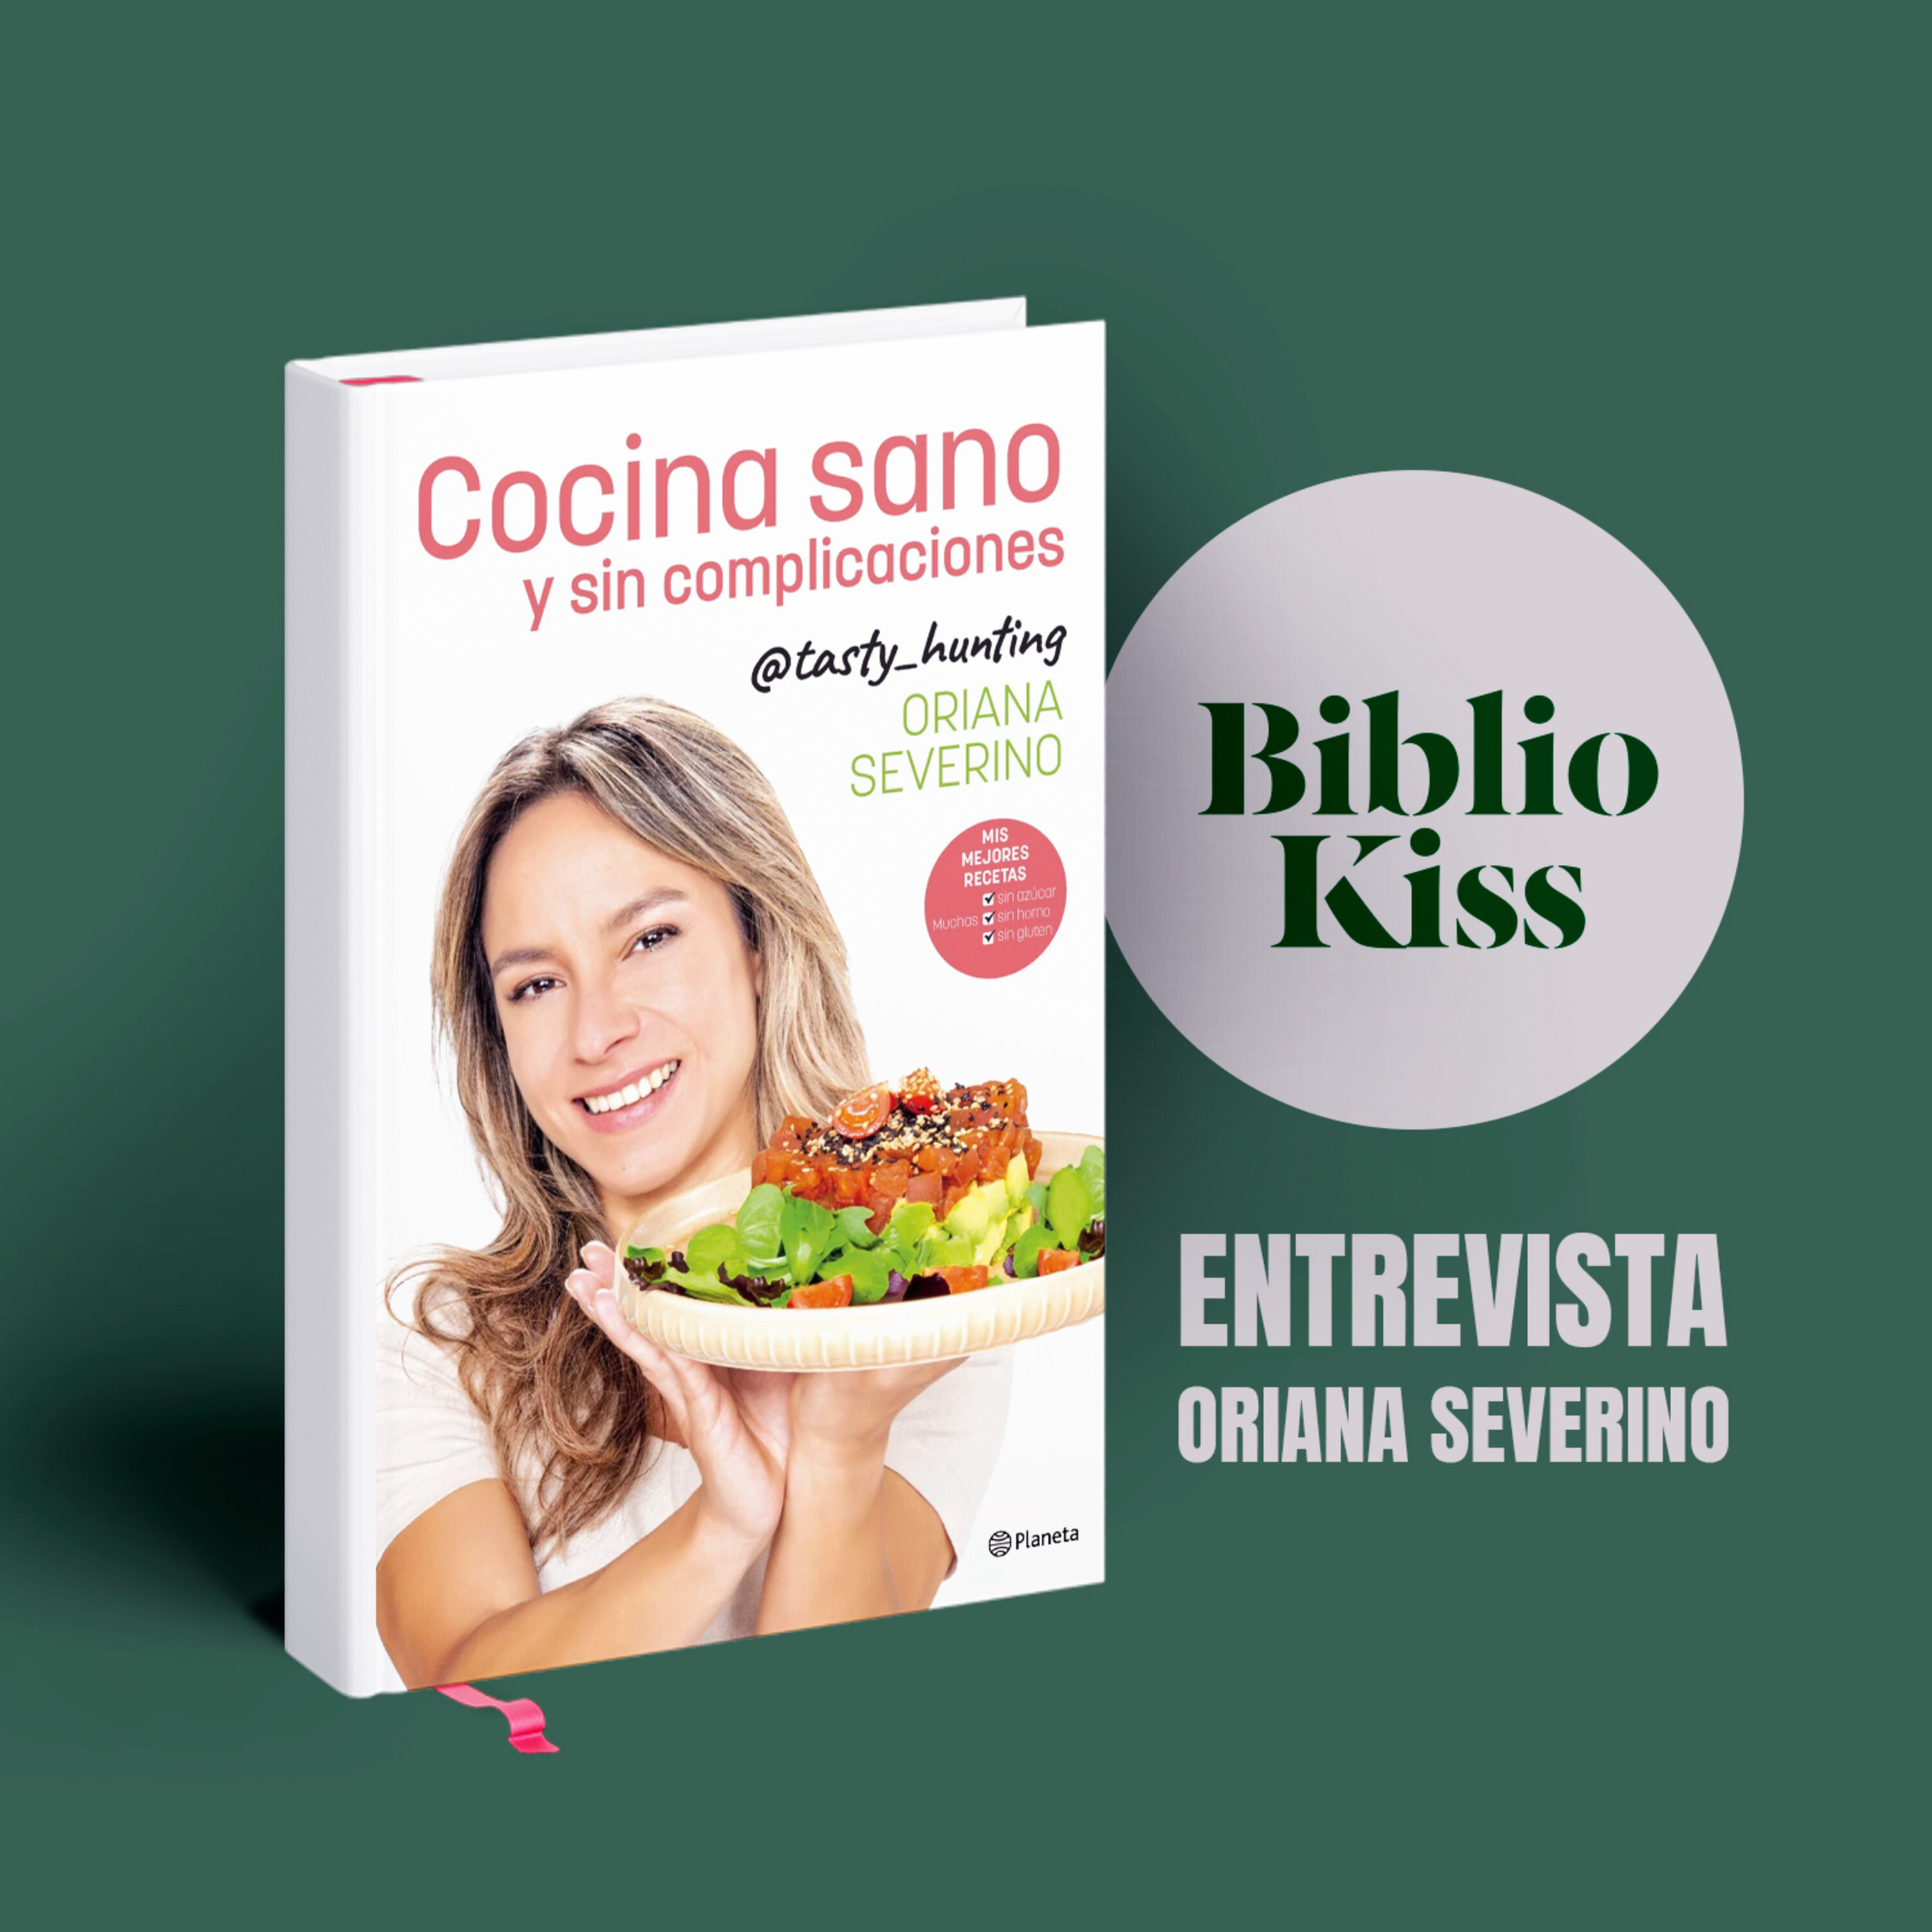 Oriana Severino nos enseña a “cocinar sano y sin complicaciones”